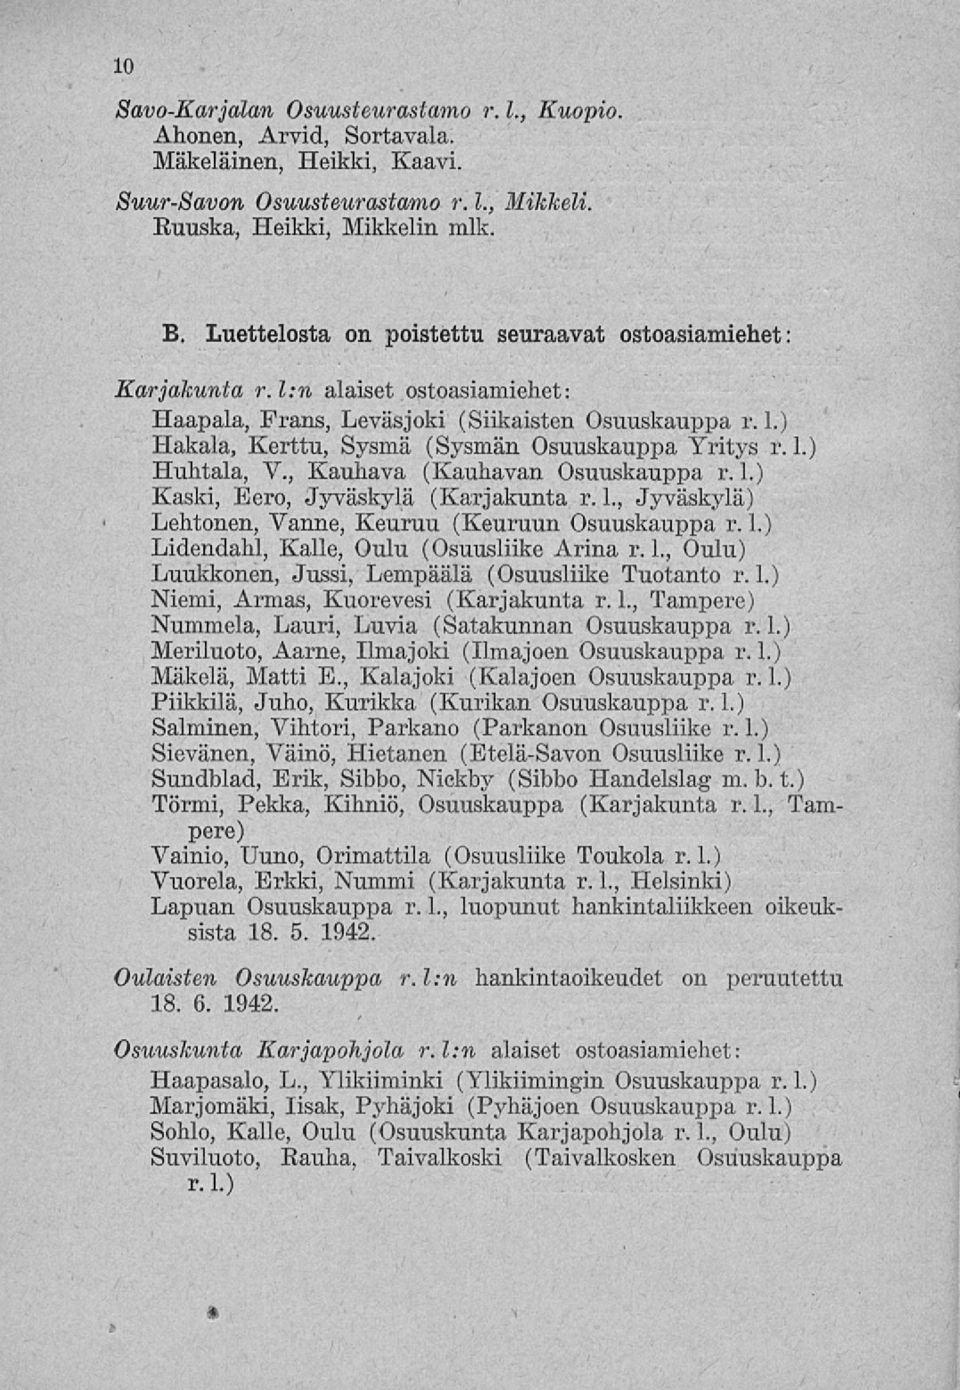 1.) Huhtala, V., Kauhava (Kauhavan Osuuskauppa r. 1.) Kaski, Eero, Jyväskylä (Karjakunta r. L, Jyväskylä) Lehtonen, Vanne, Keuruu (Keuruun Osuuskauppa r. 1.) Lidendahl, Kalle, Oulu (Osuusliike Arina r.